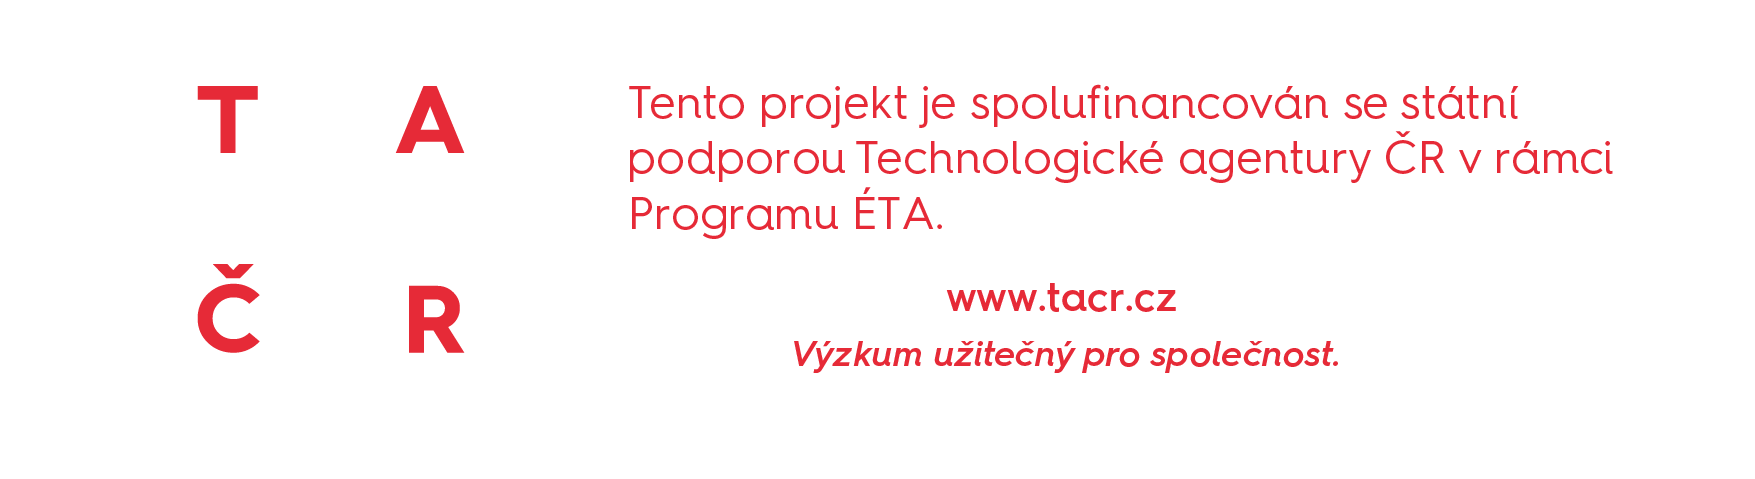 Tento projekt je spolufinancován se státní podporou Technologické agentury ČR v rámci Programu ÉTA.